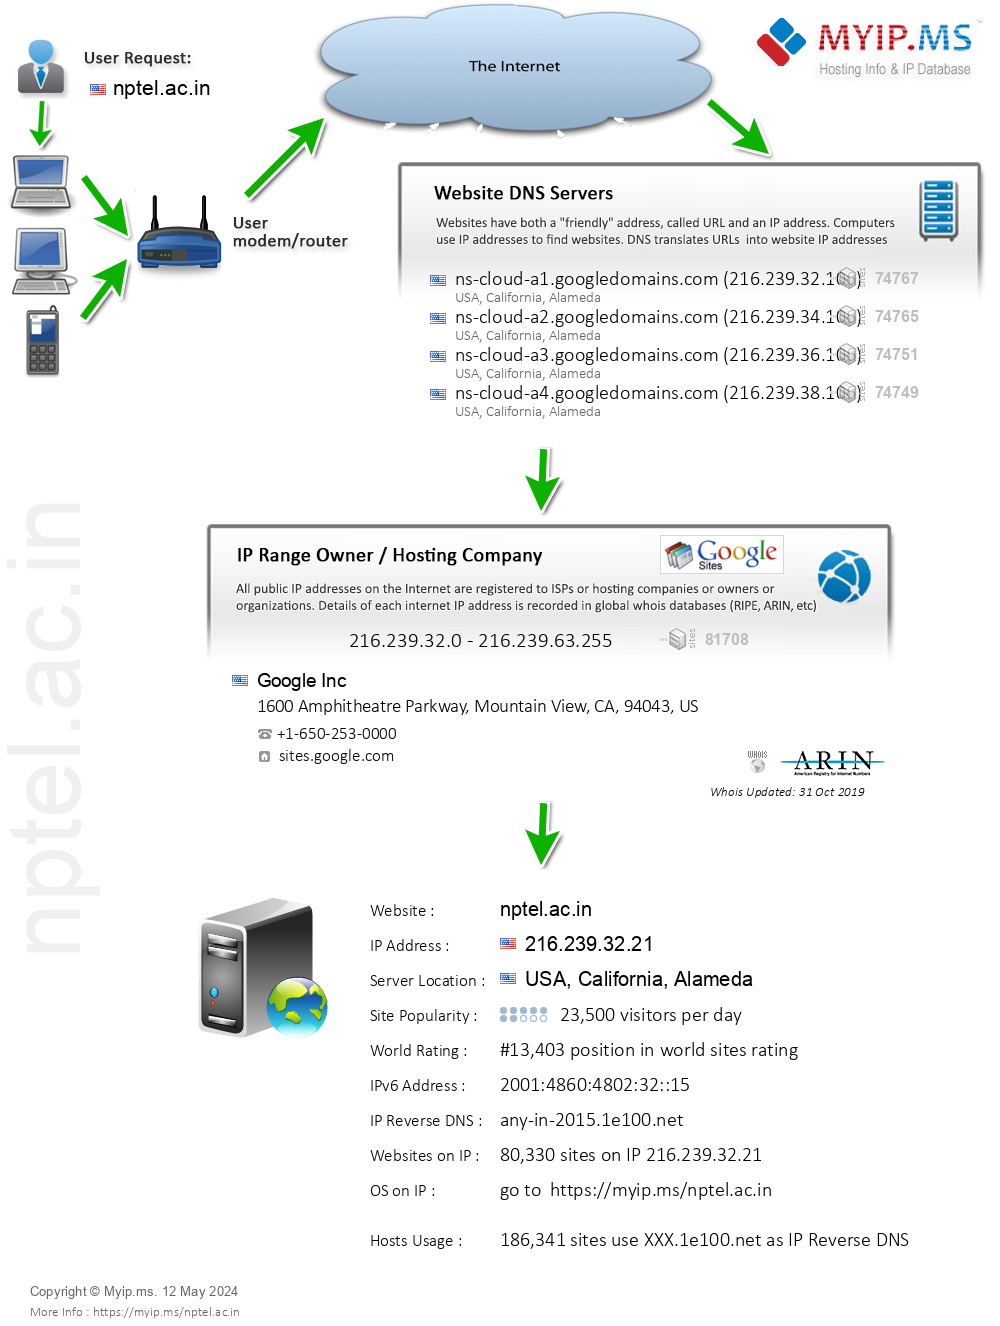 Nptel.ac.in - Website Hosting Visual IP Diagram